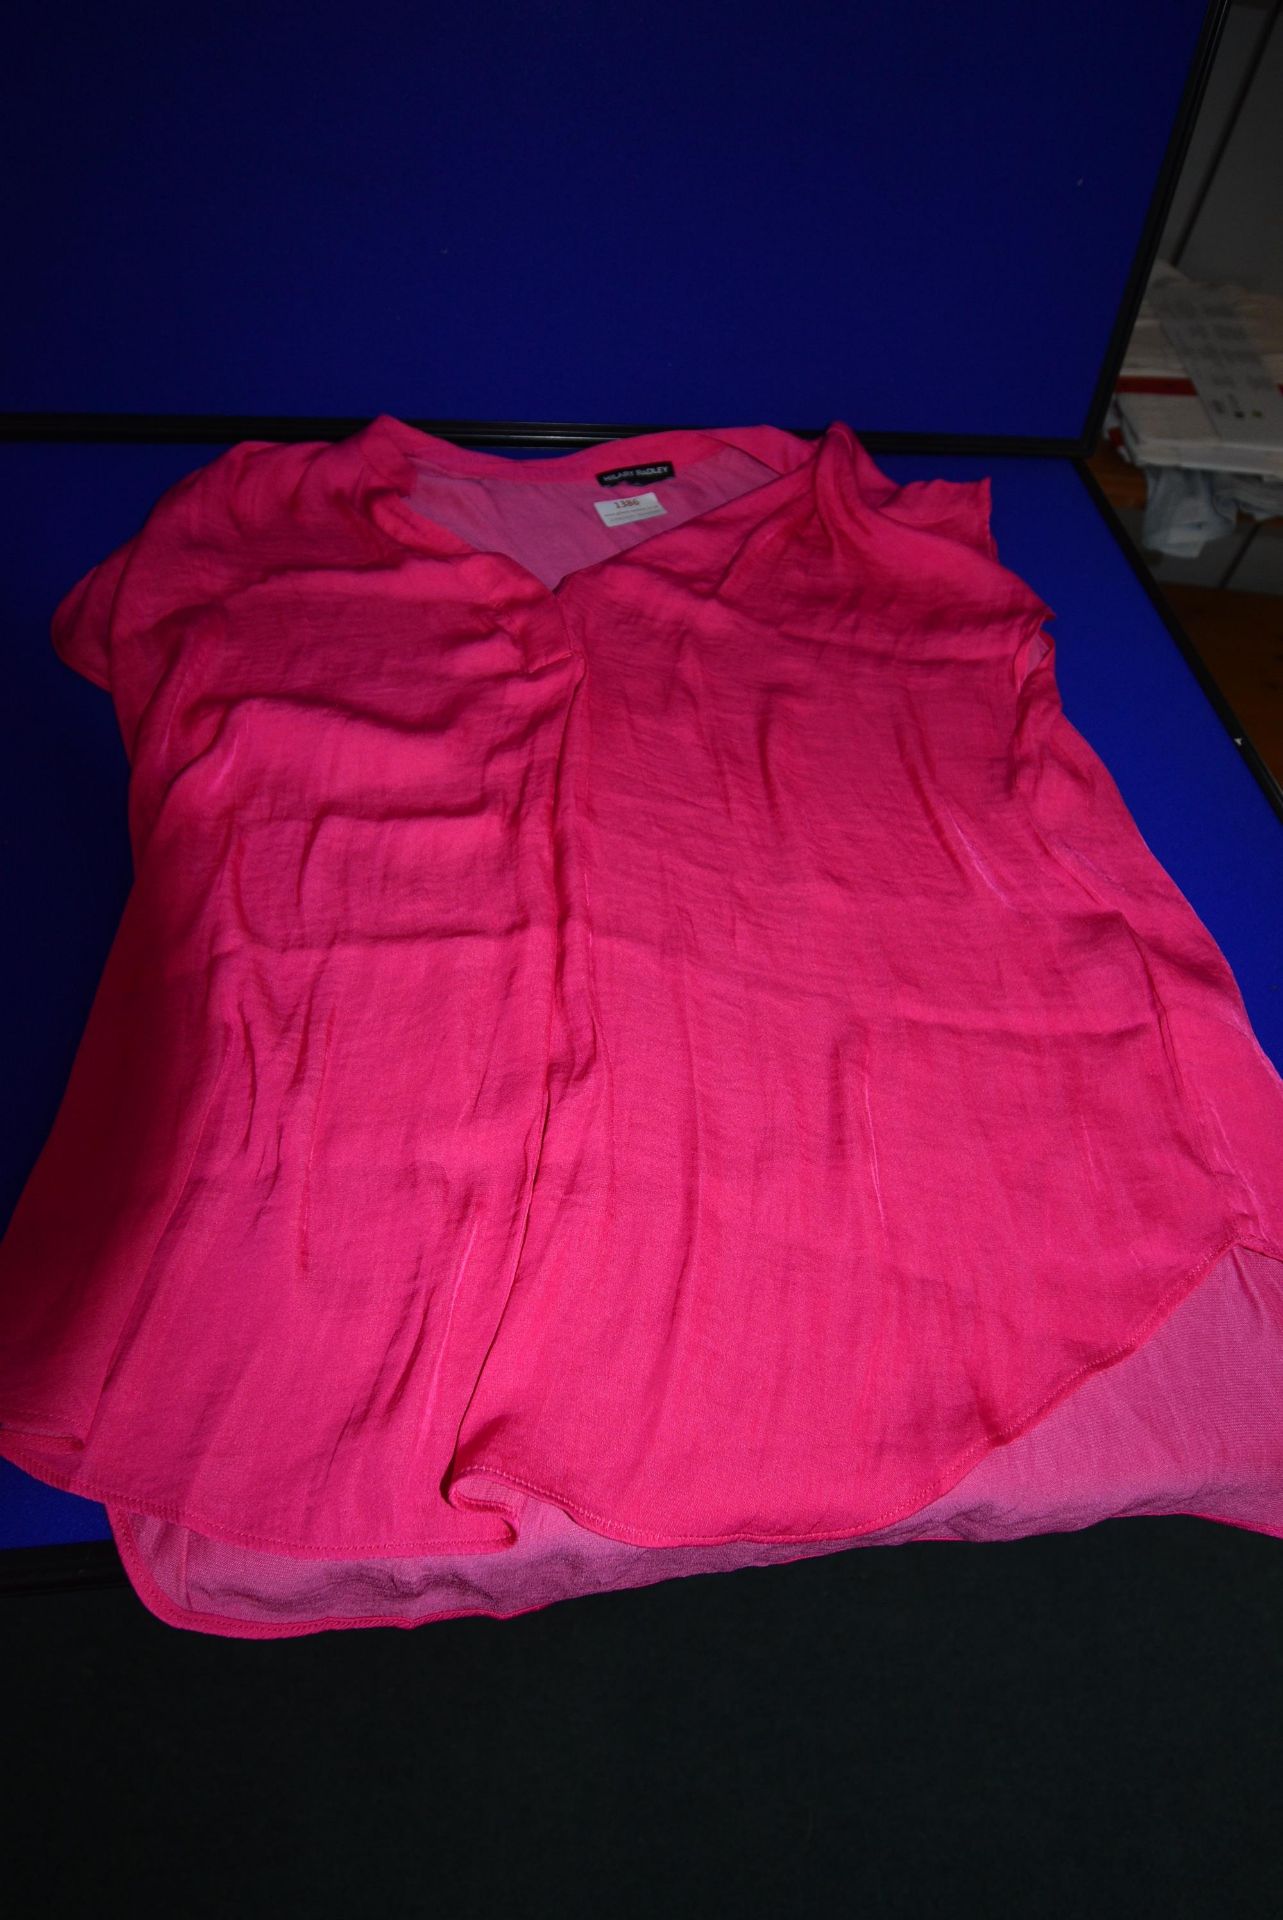 *Hilary Radley Short Sleeve Drop Shoulder Top in Pink Size: S